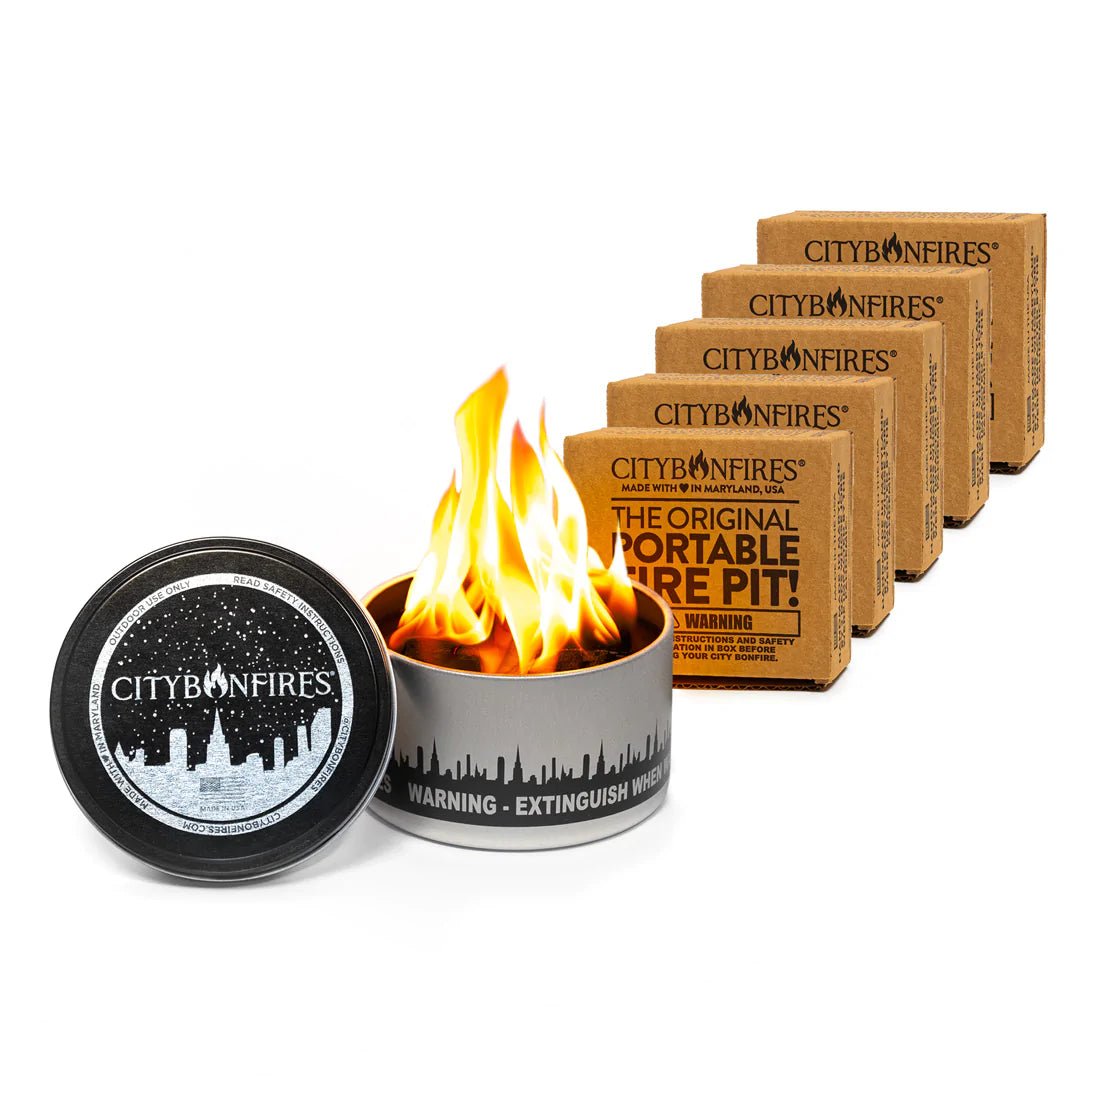 City Bonfire (Portable Fire Pit) - City Bonfires